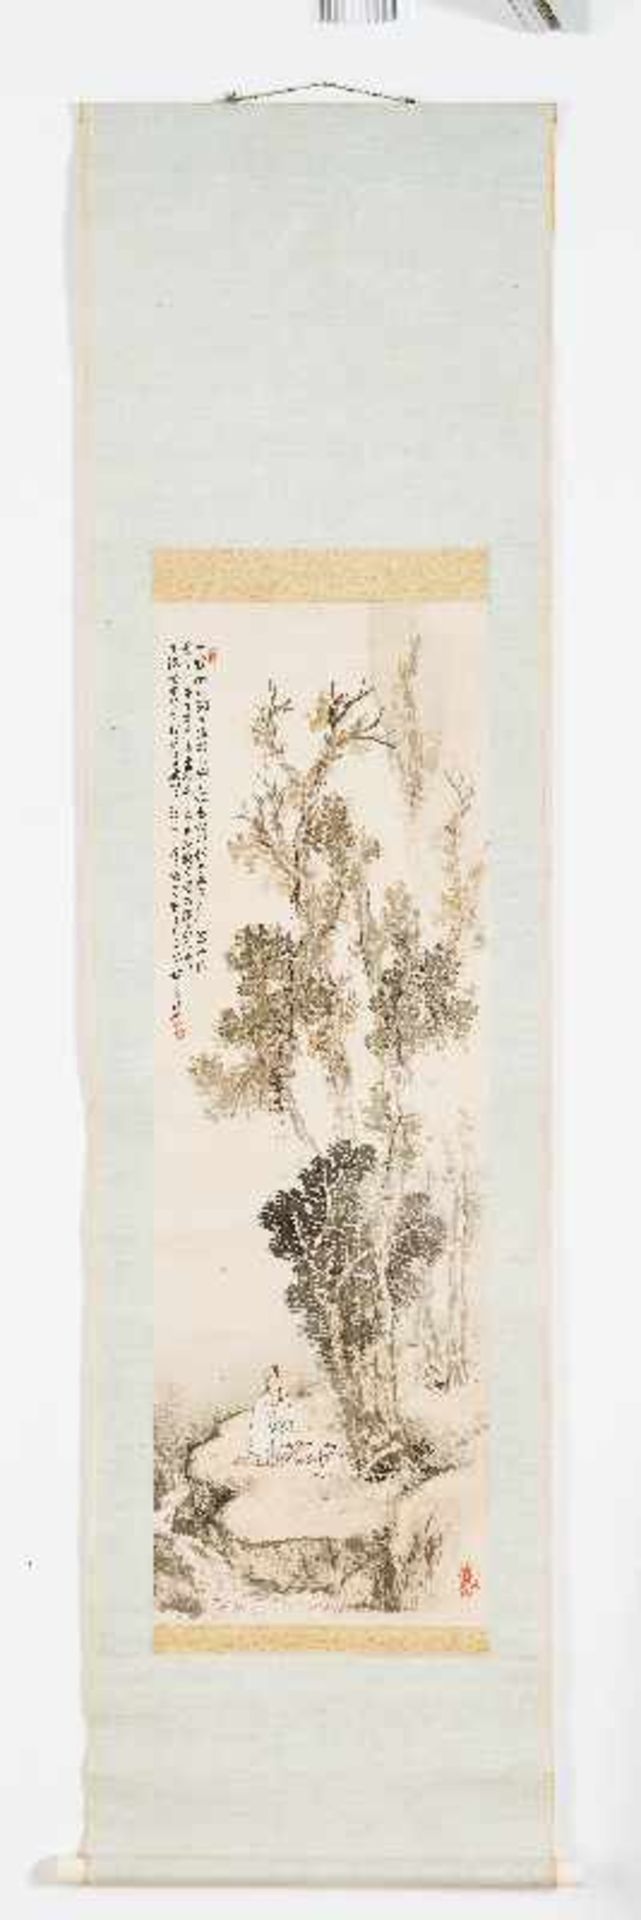 HASHIMOTO KANSETSU (1883-1945): GENIESSER AM BERGBACH Tusche und Farben auf Papier. Japan, 1. H. 20. - Image 2 of 4